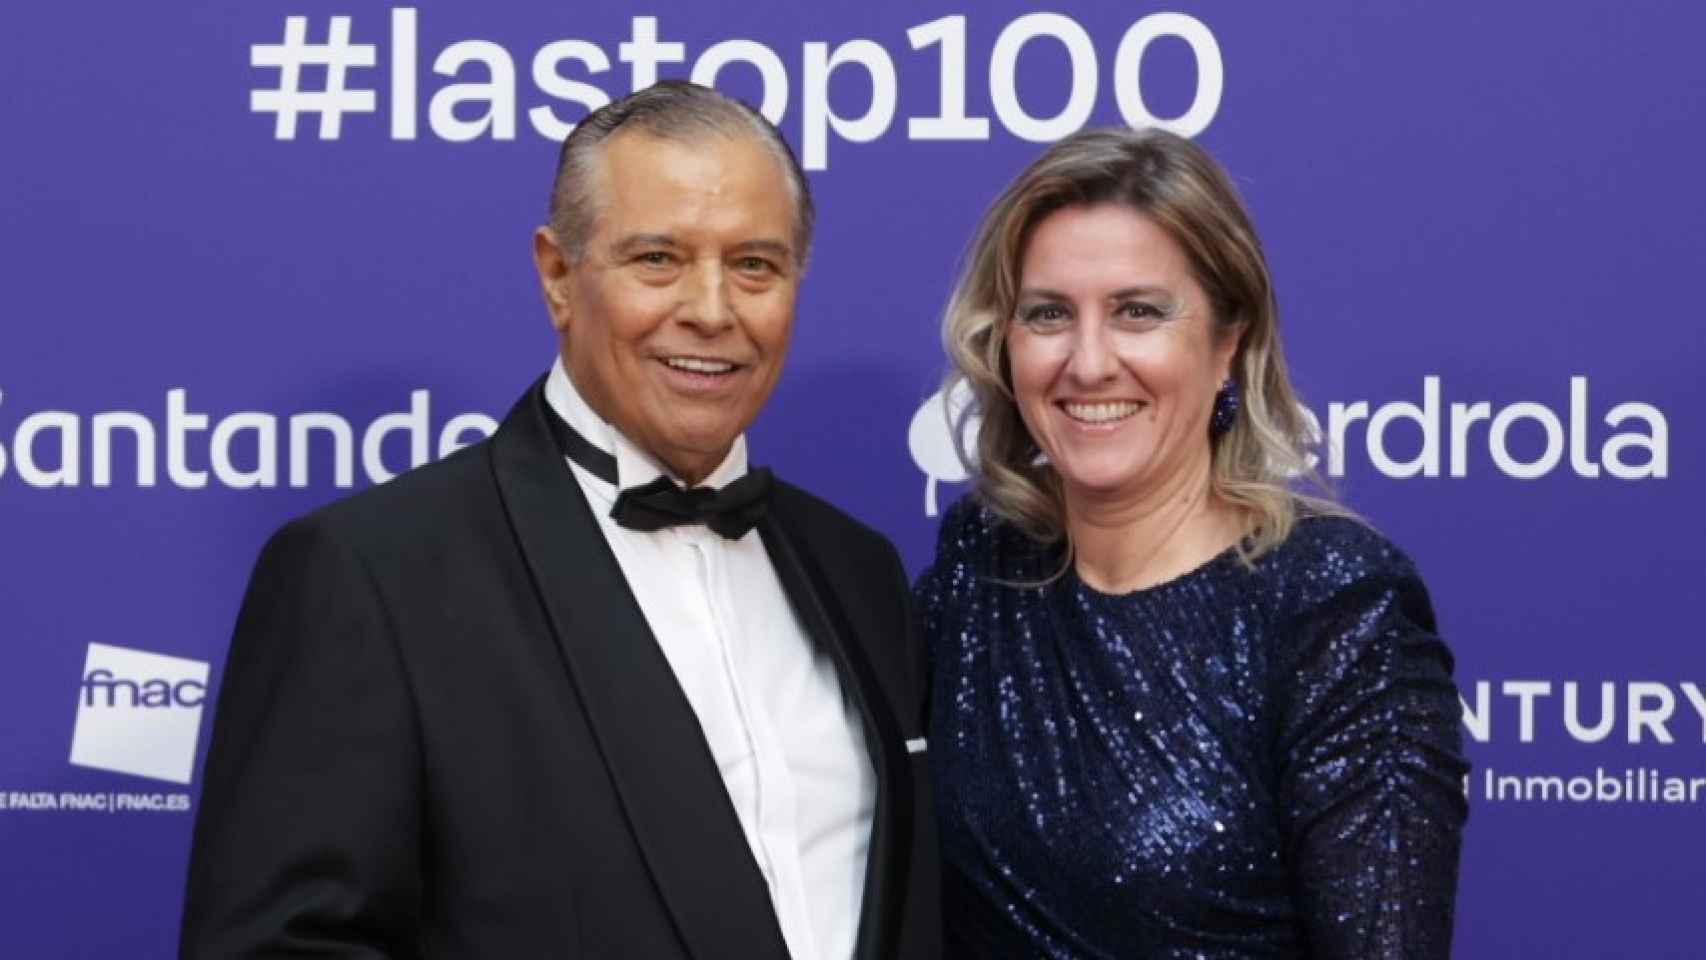 El doctor Beltrán en la gala de Las Top100  junto a Patricia Pérez.